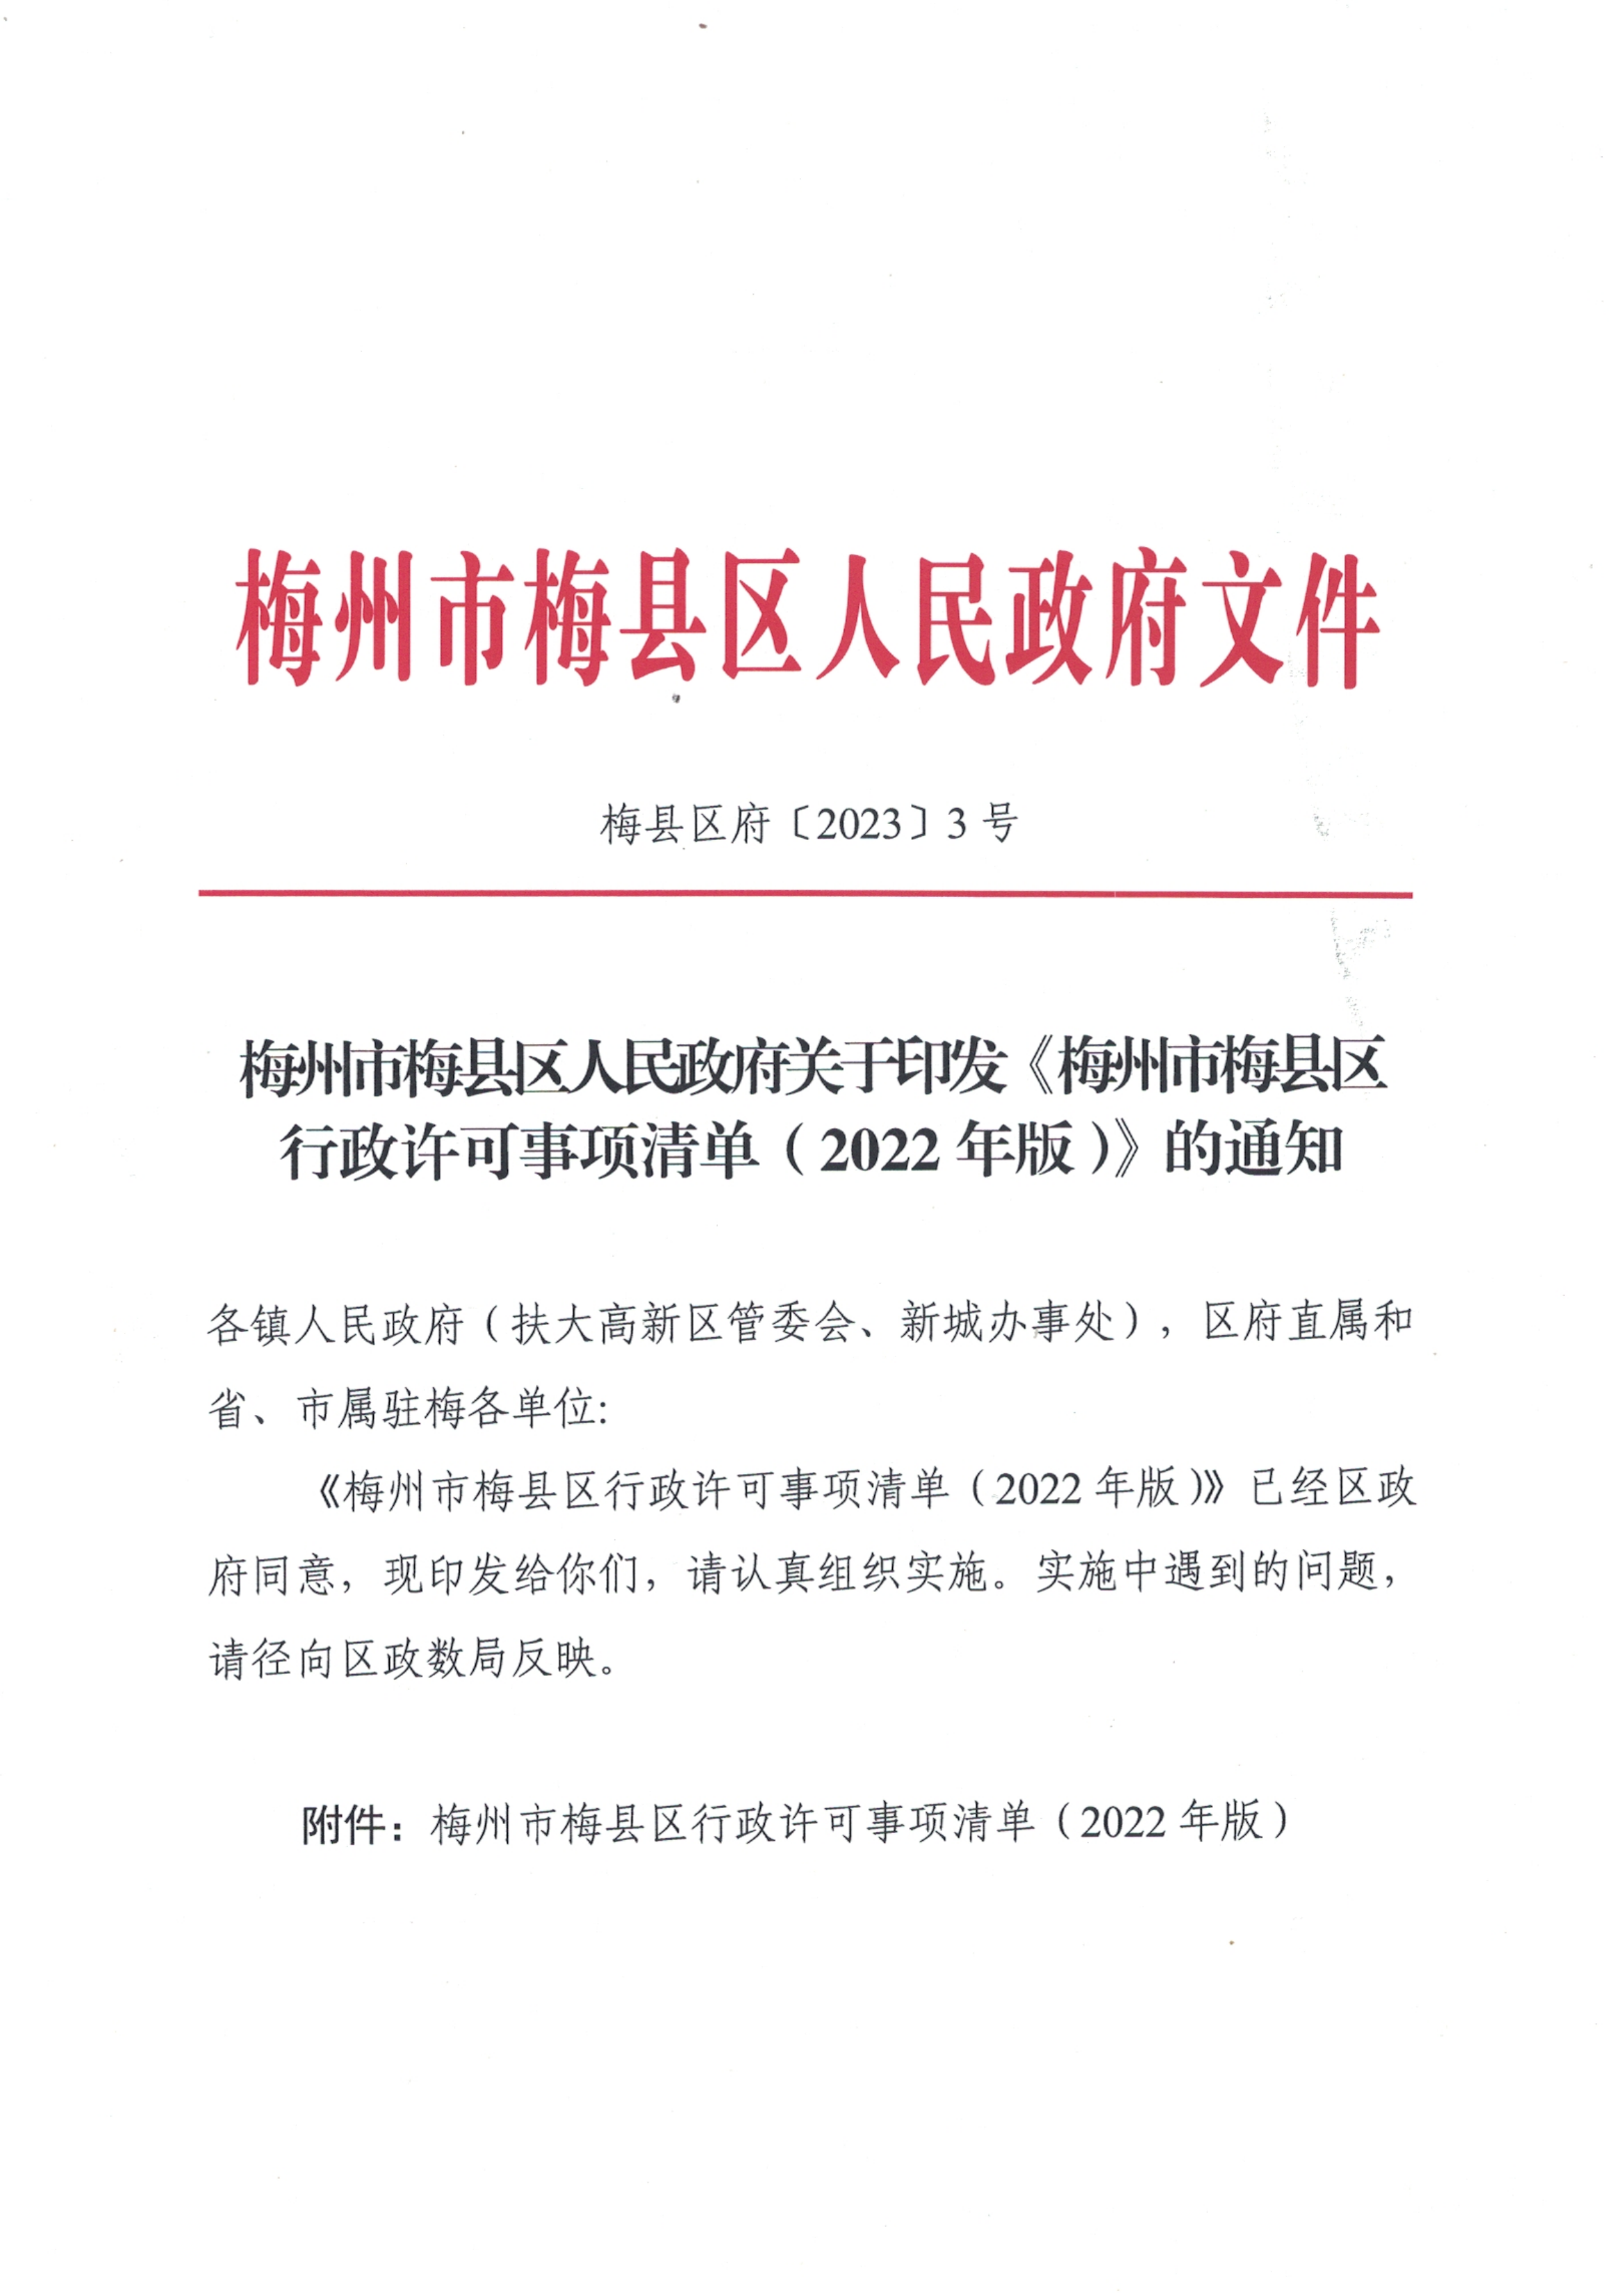 梅州市梅县区人民政府关于印发《梅州市梅县区行政许可事项清单（2022年版）》的通知_00.png